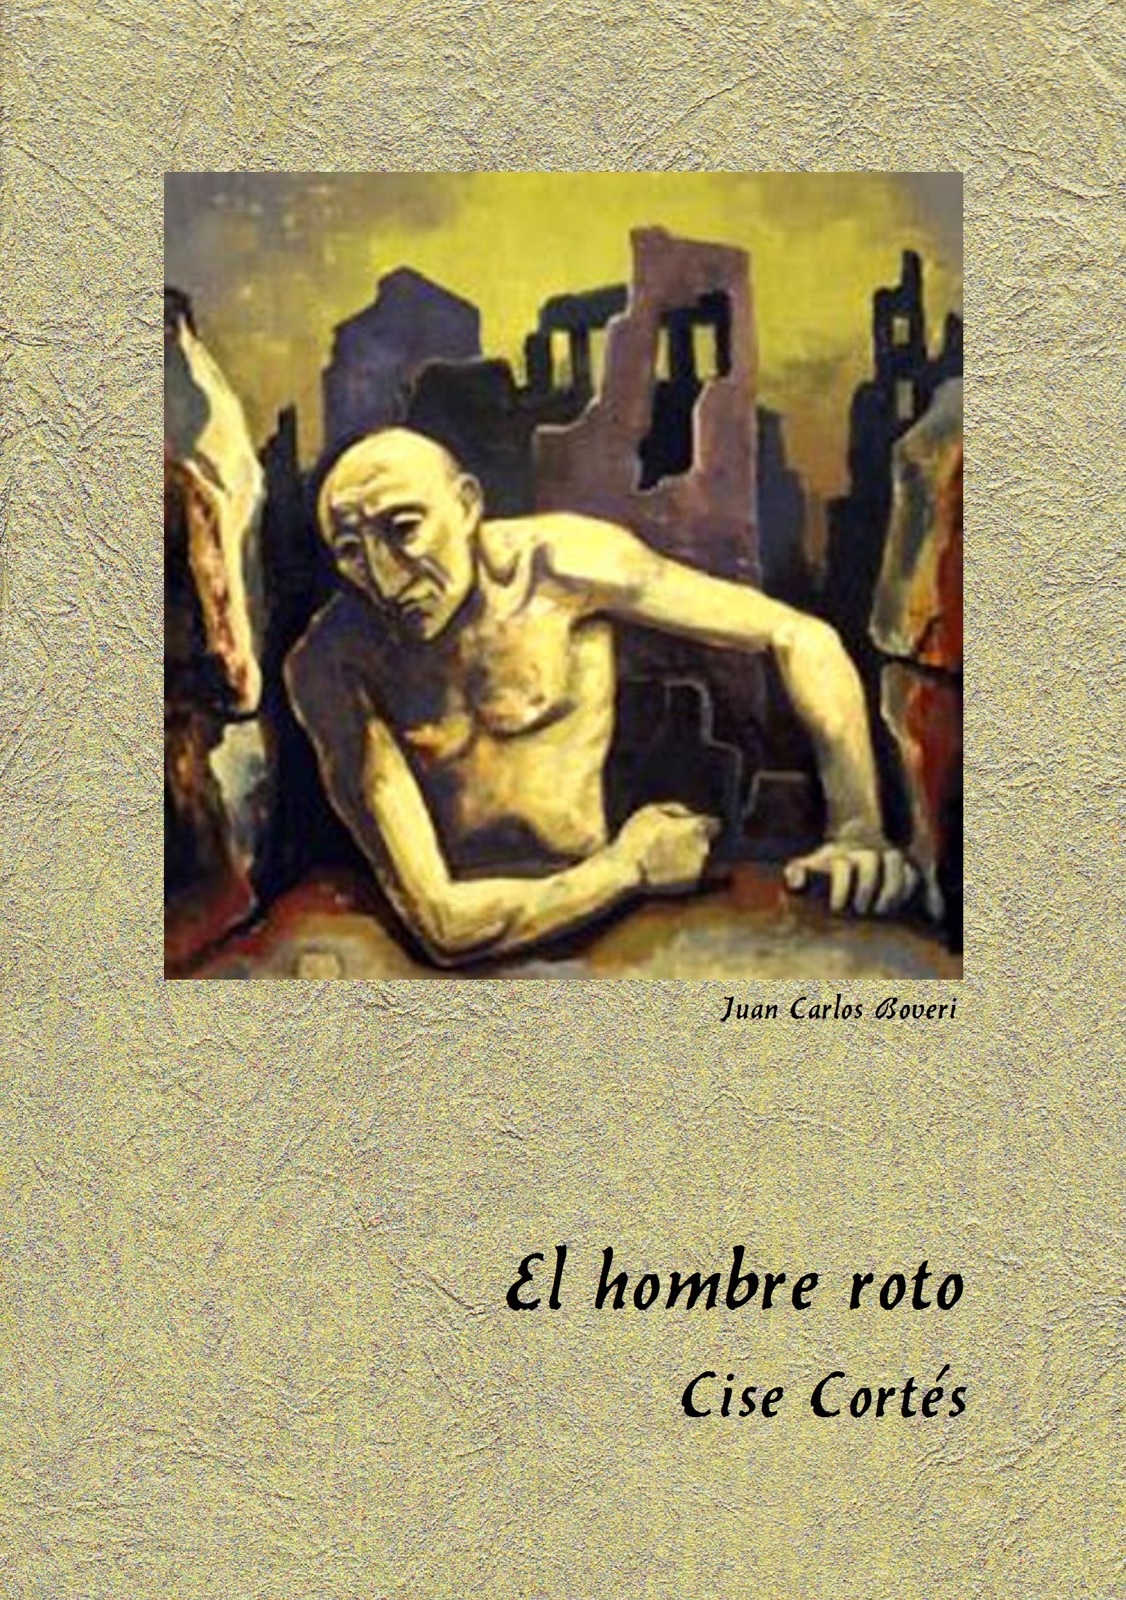 Portada de "El hombre roto", de Cise Cortés